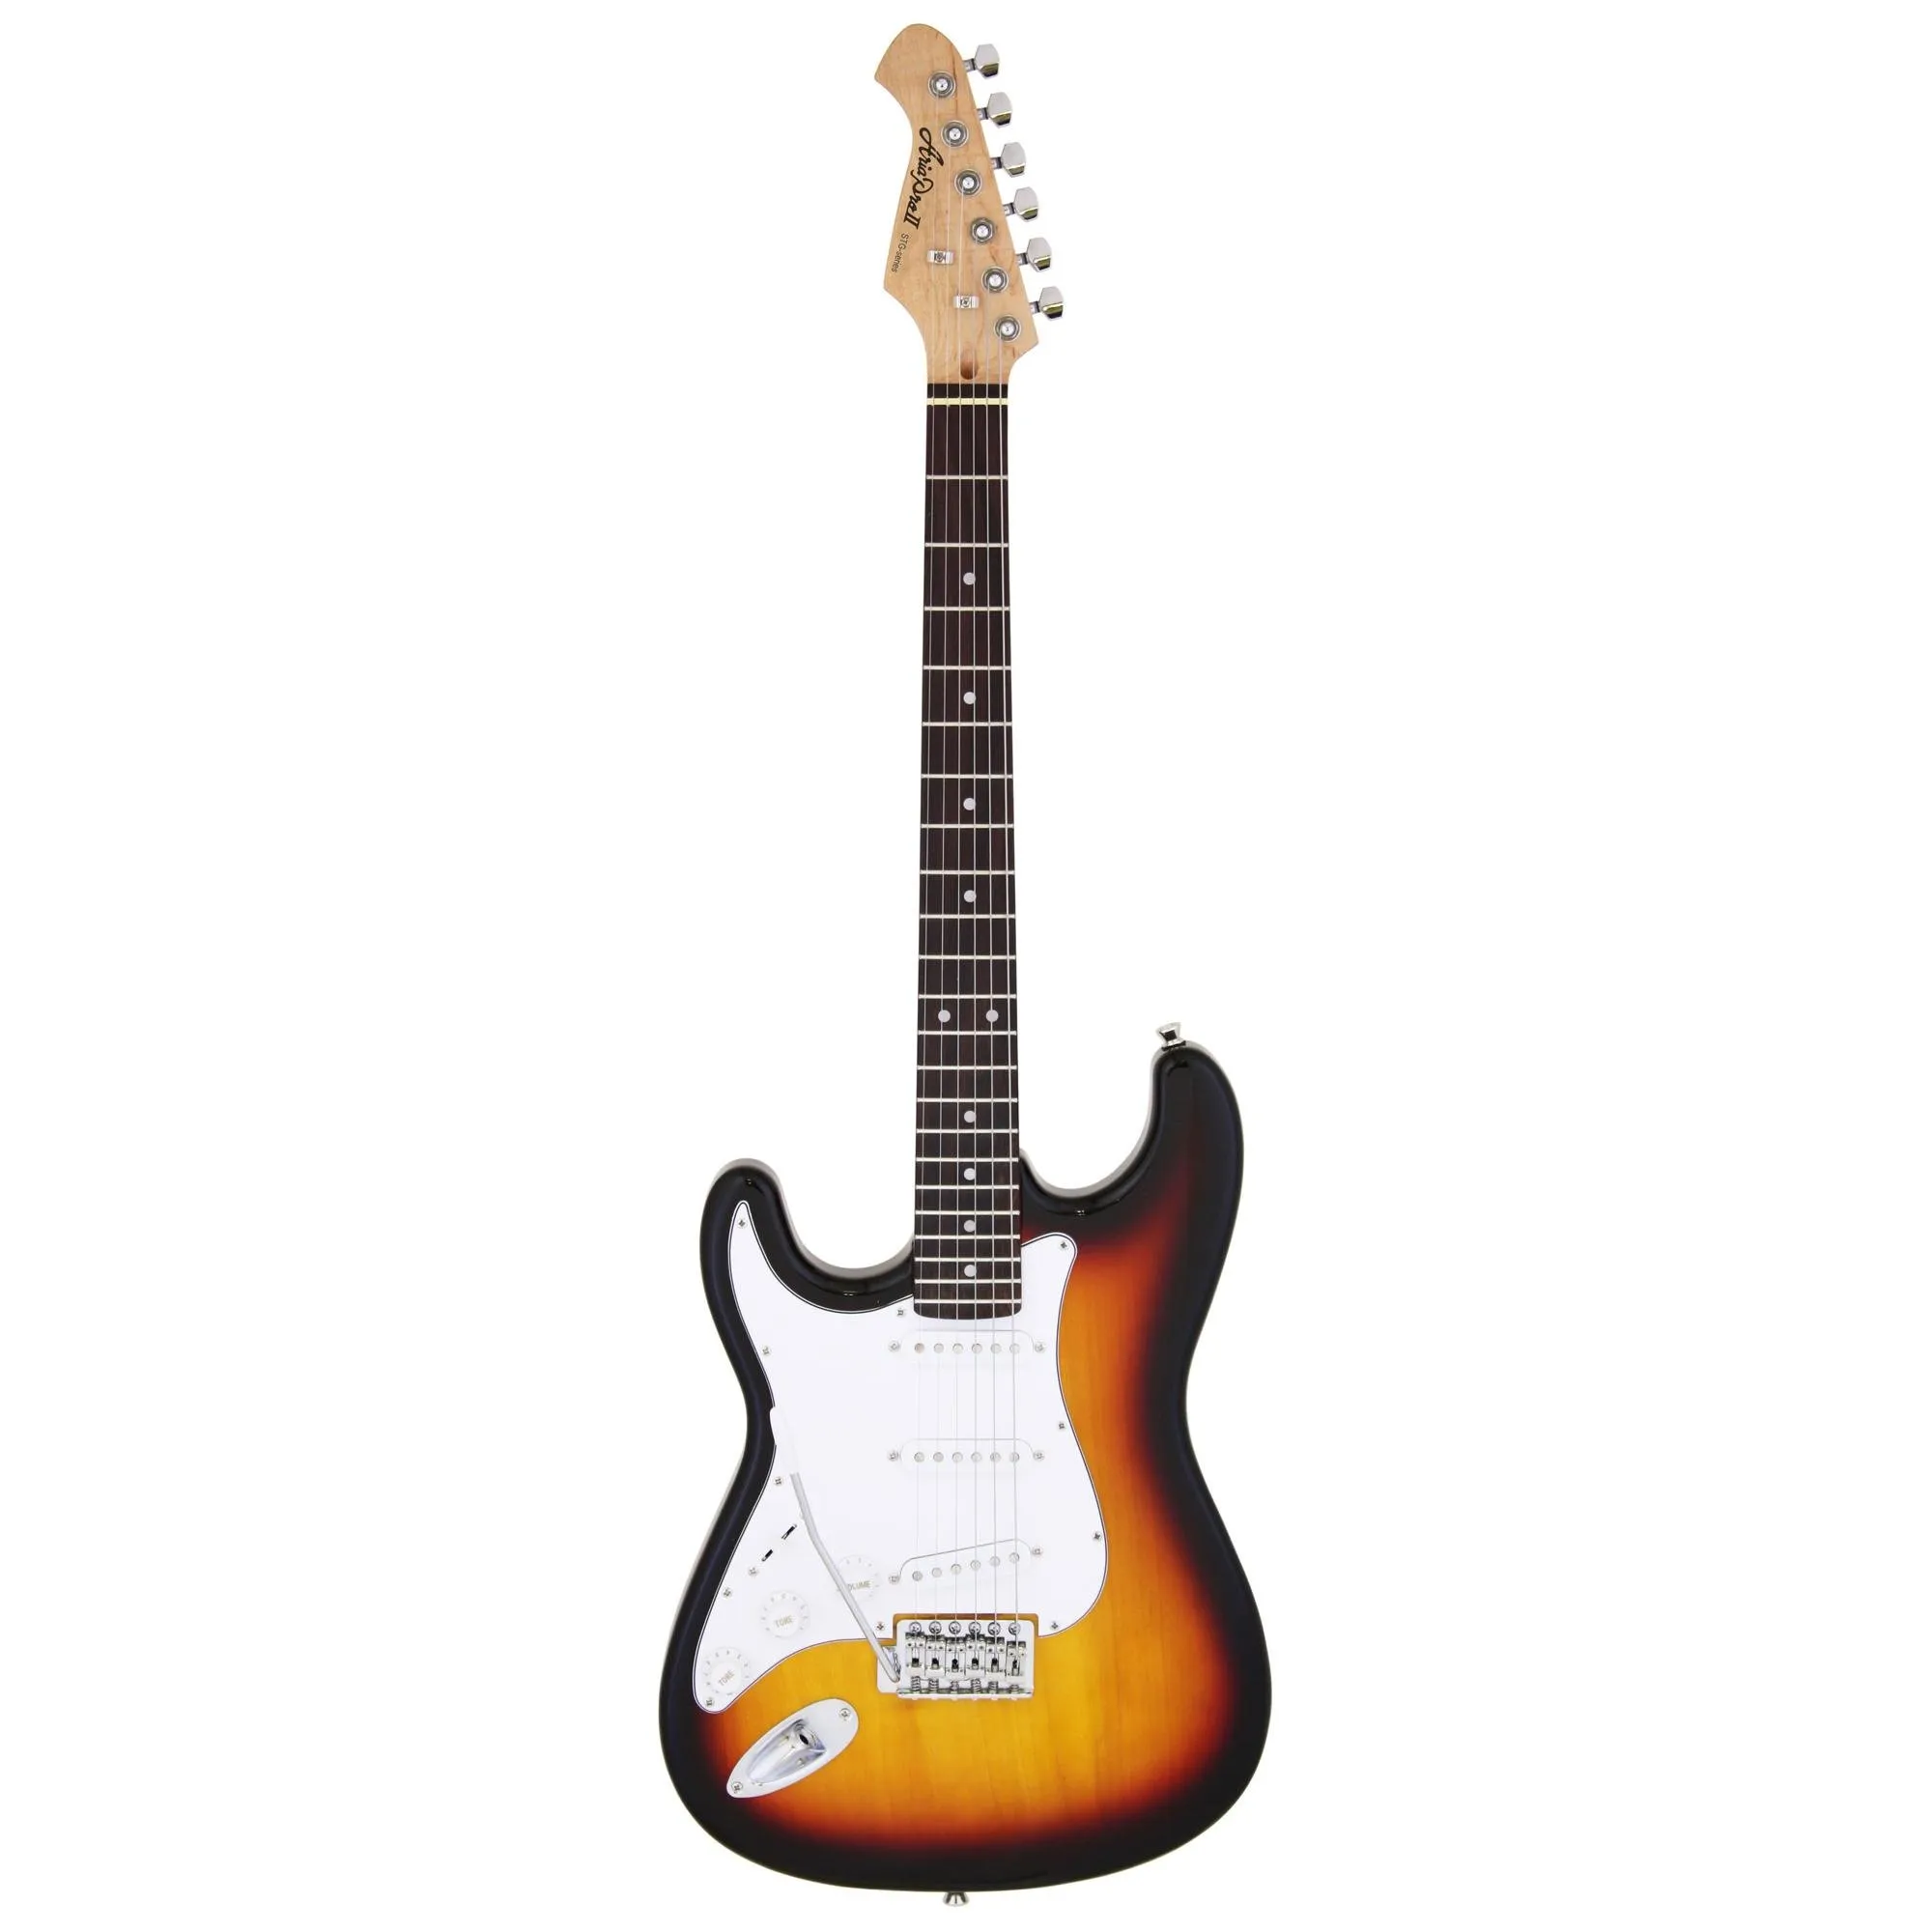 Guitarra Aria Pro II STG-003/M LH 3 Tone Sunburst (canhoto) por 1.075,00 à vista no boleto/pix ou parcele em até 12x sem juros. Compre na loja Mundomax!